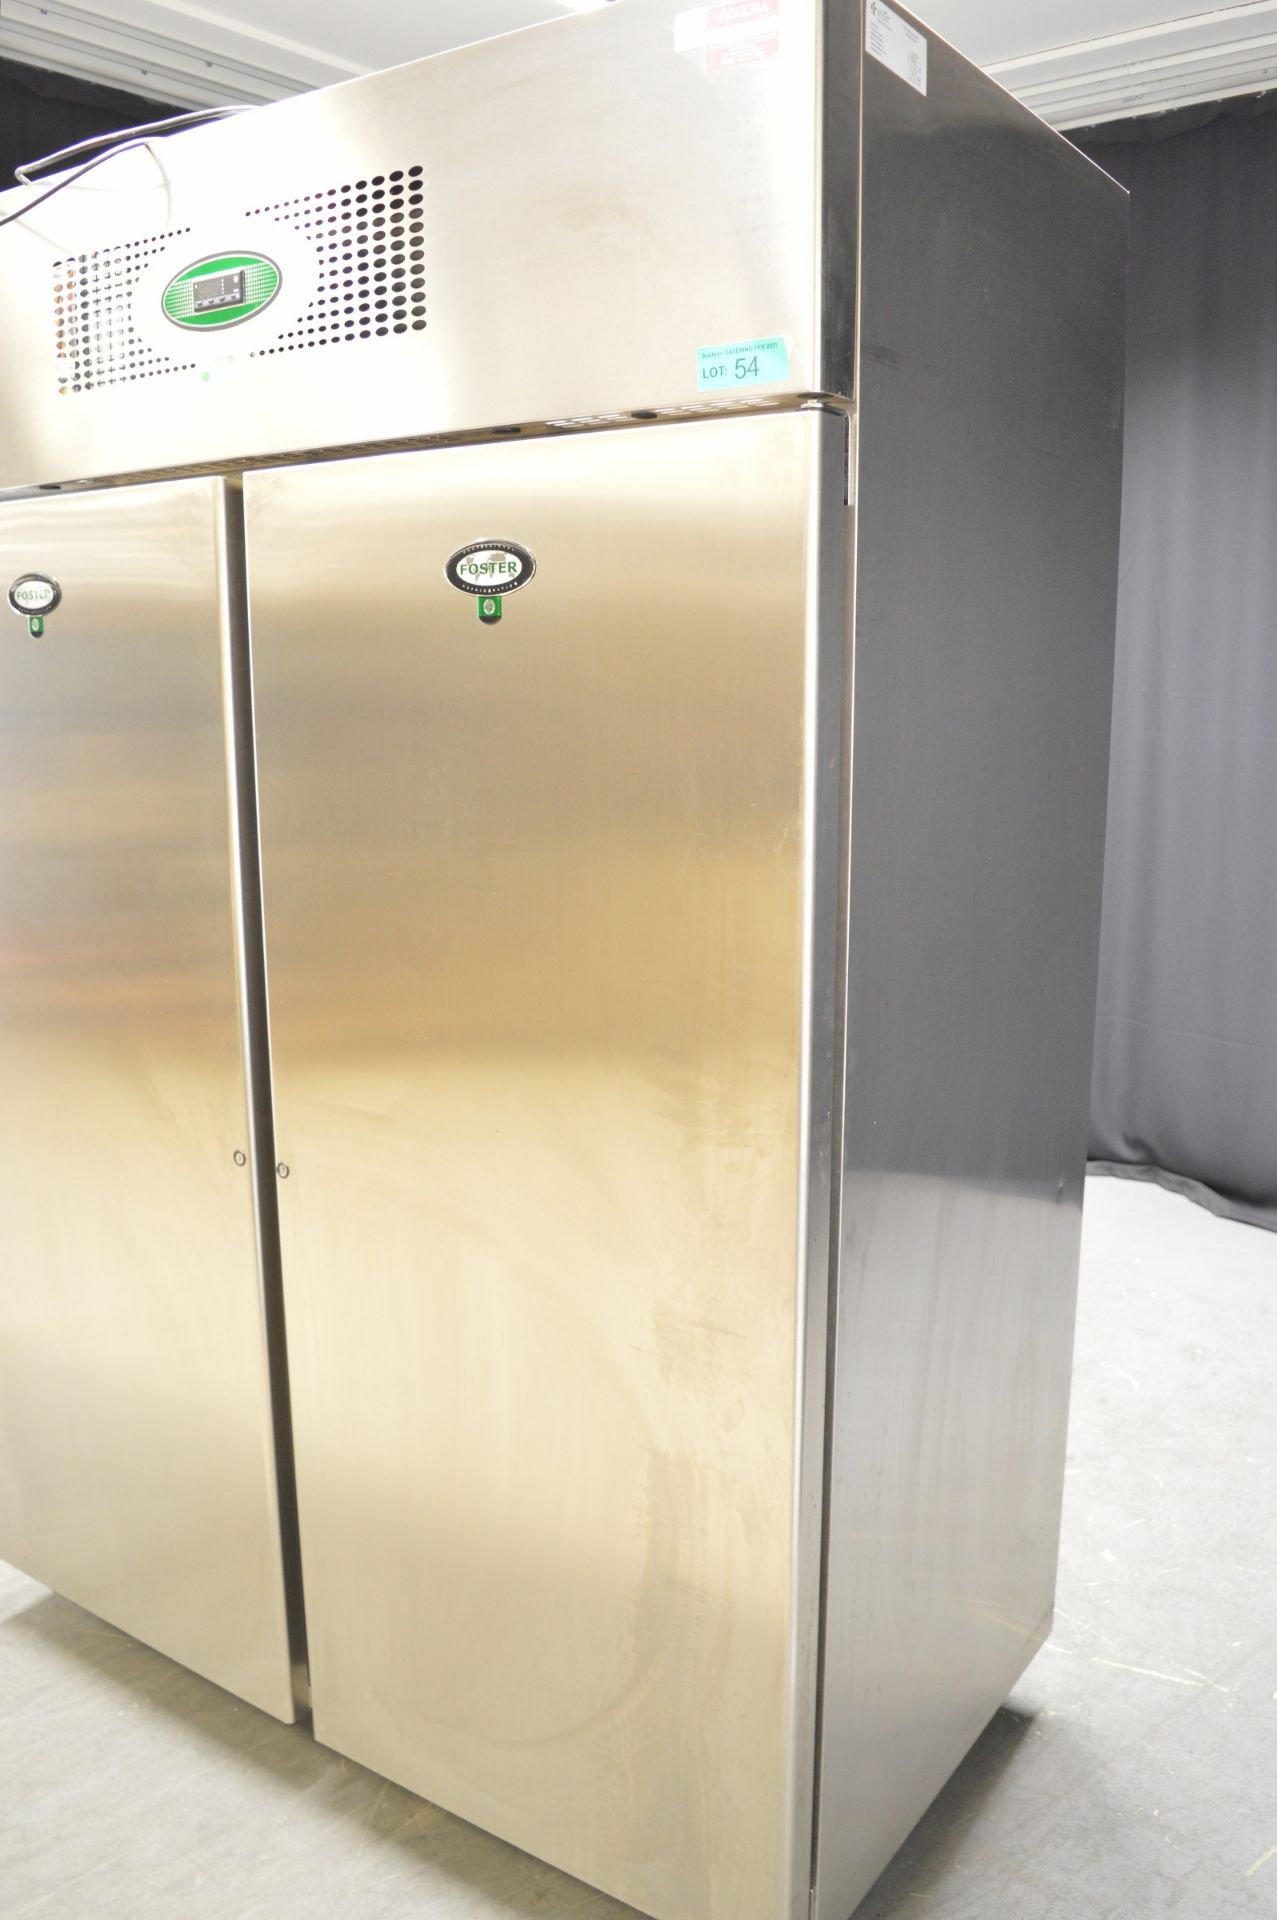 Foster EPROG1350H Double Door Refrigerator - Image 3 of 8